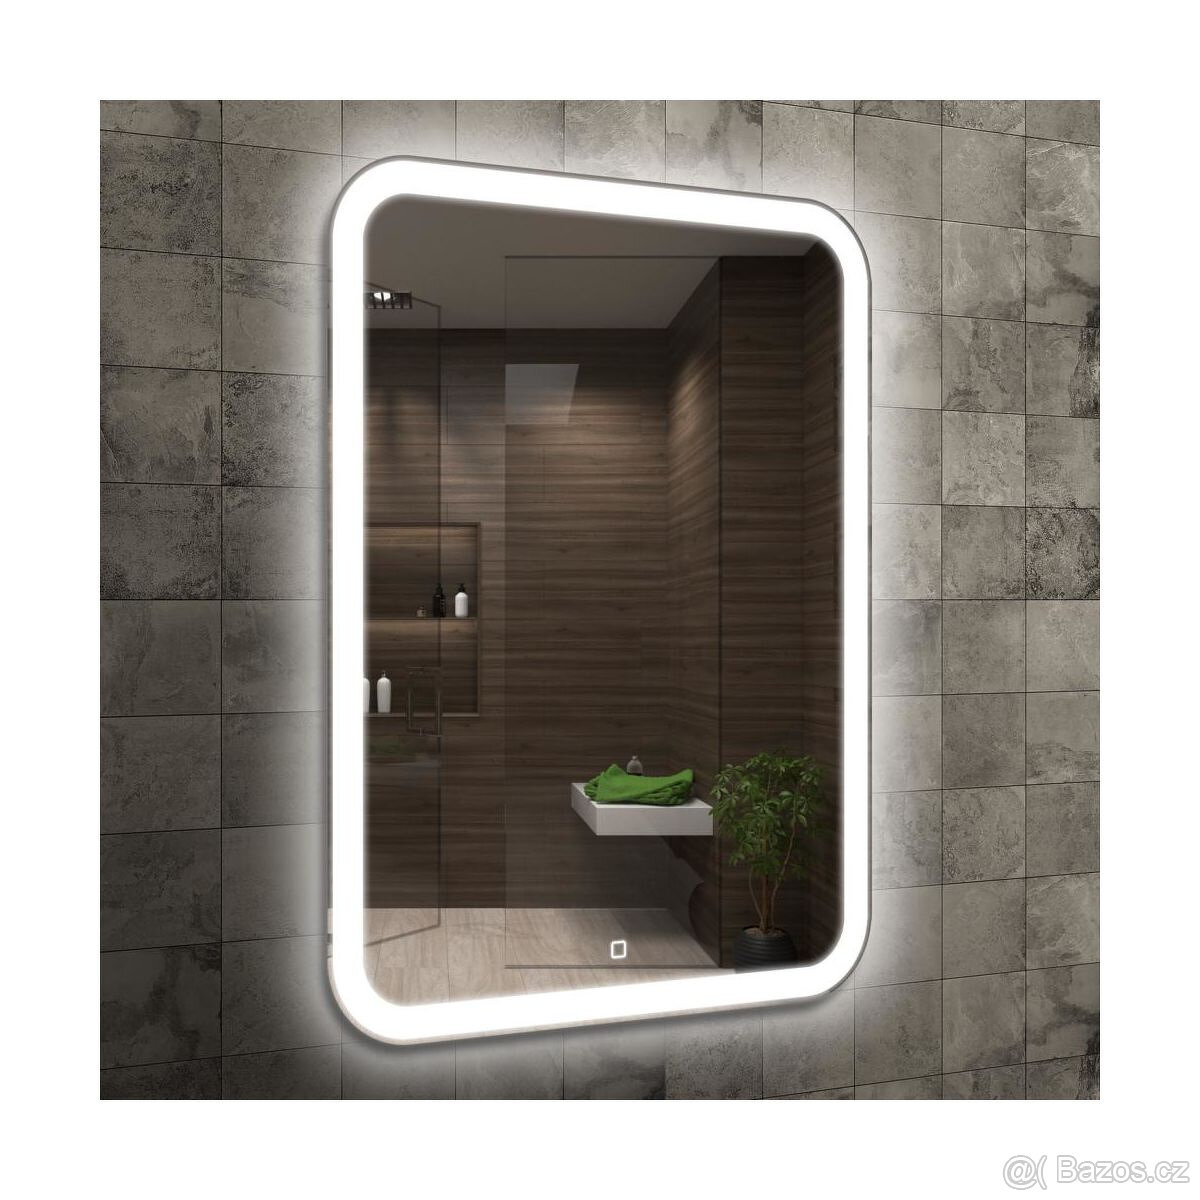 Luxusní koupelnové zrcadlo s LED osvětlením, NOVÉ